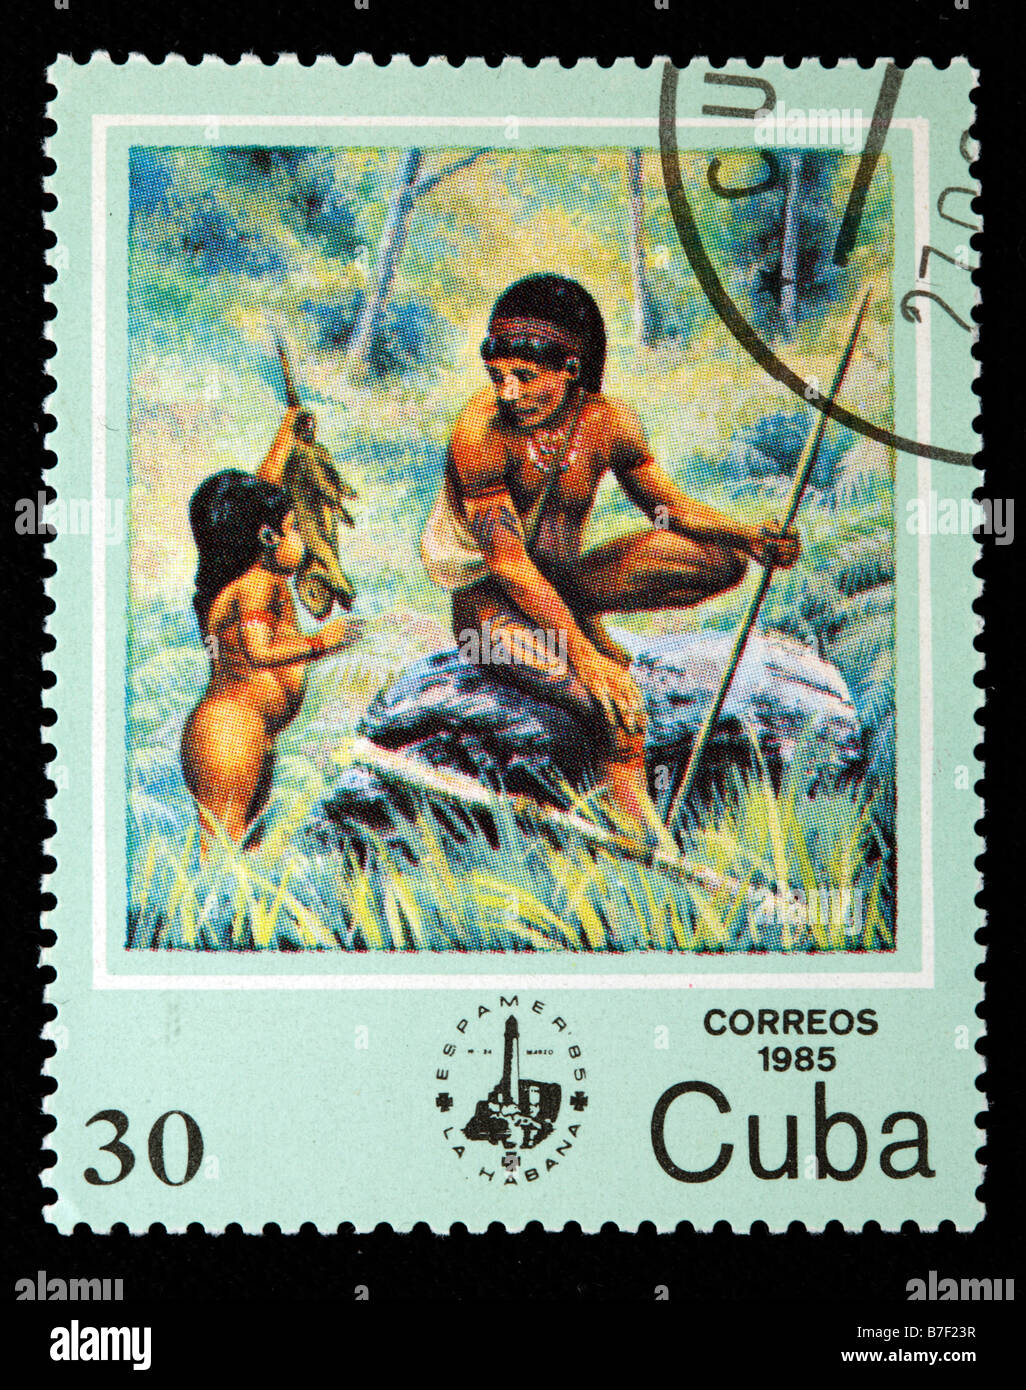 La caccia, la vita di uomini primitivi preistorici savage primordiale, francobollo, Cuba, 1985 Foto Stock